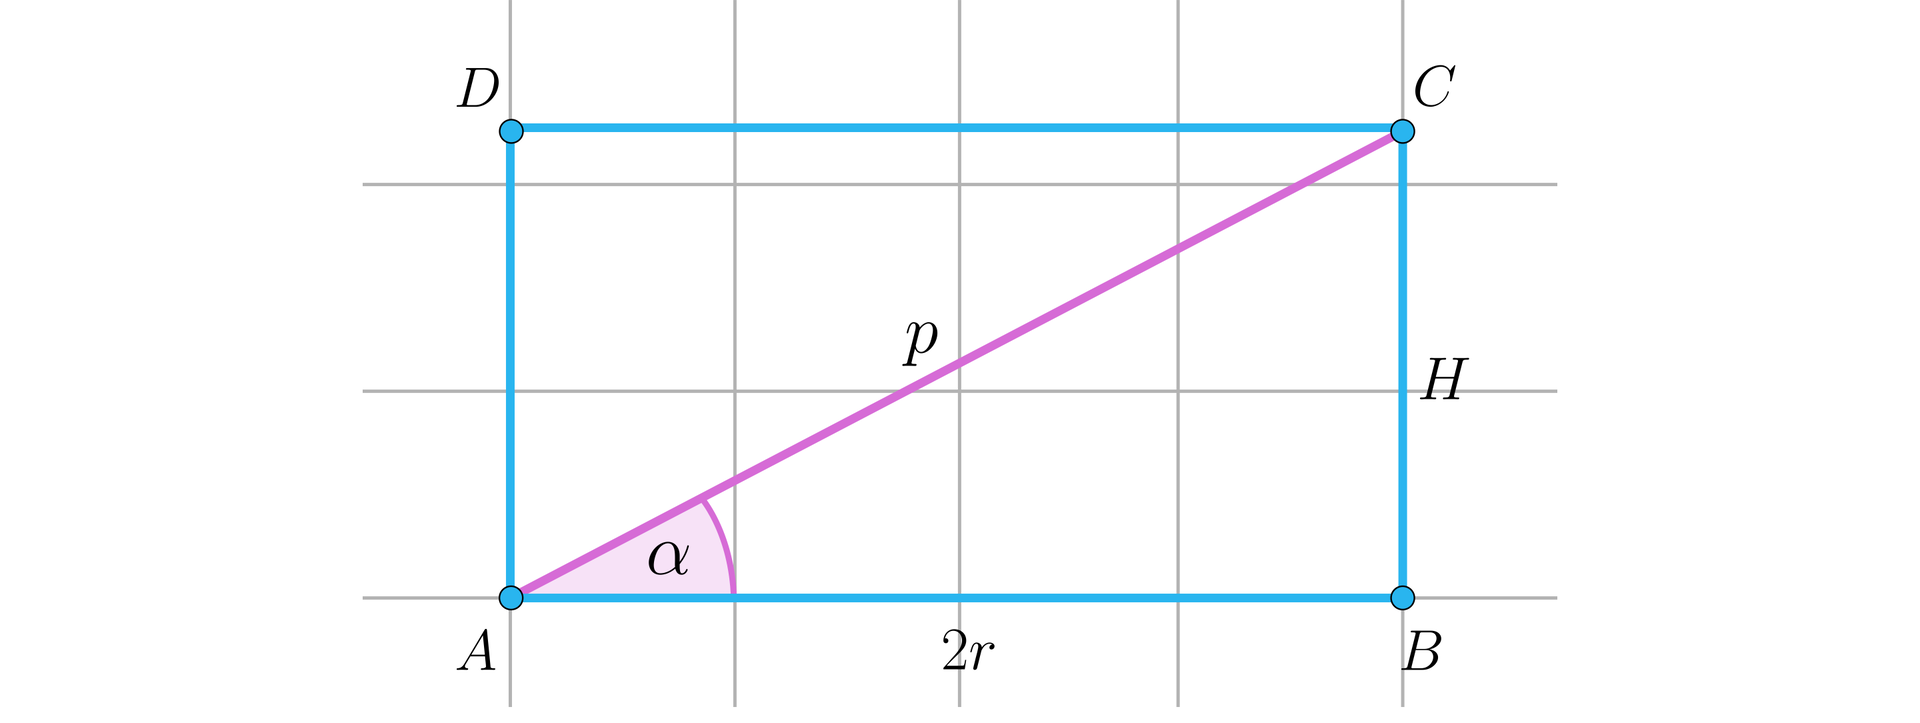 Ilustracja przedstawia prostokąt  A B C D z zaznaczoną przekątną A C o długości p. Odcinek A B ma długość dwa pi  r, natomiast odcinek B C został oznaczony jako H. Wewnątrz trójkąta prostokątnego A B C został zaznaczony kąt alfa. Kąt ten znajduje się przy wierzchołku A.